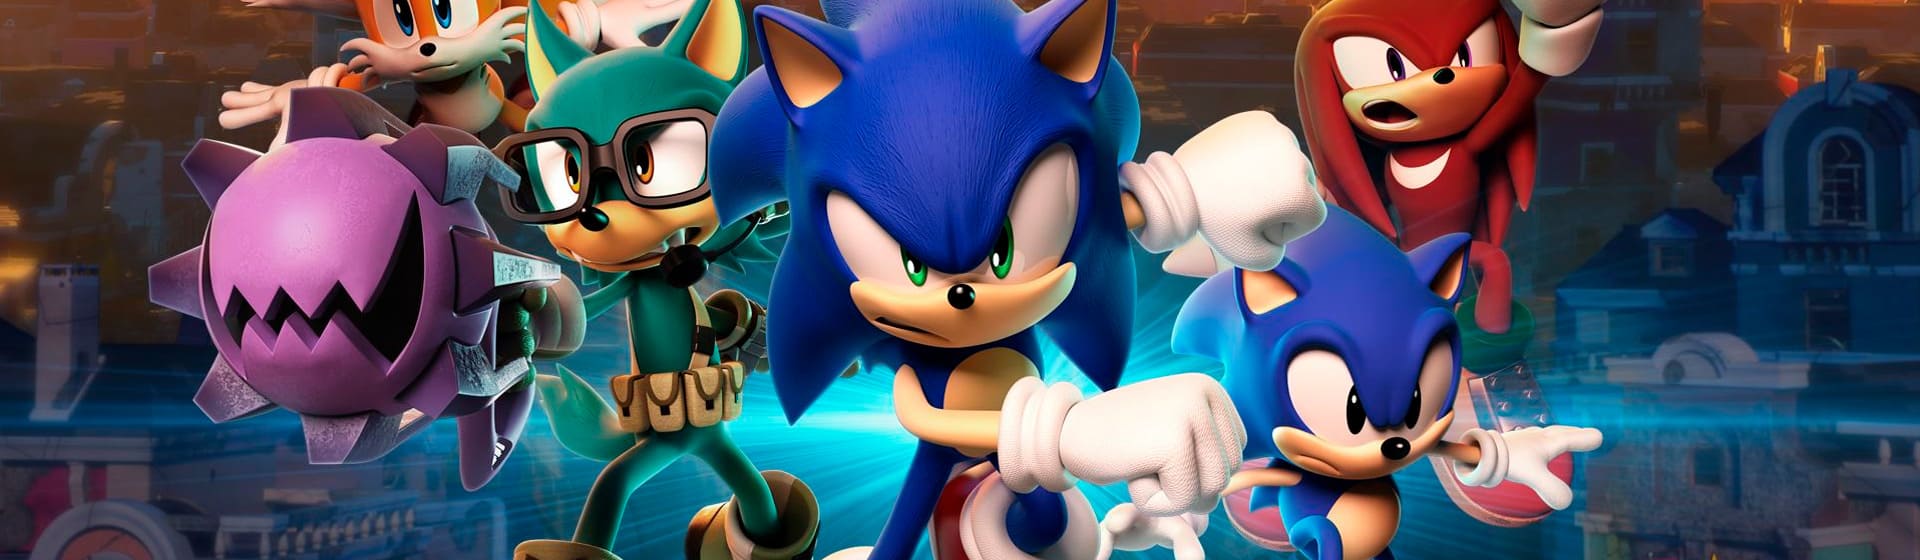 Sonic the Hedgehog - Пижамы